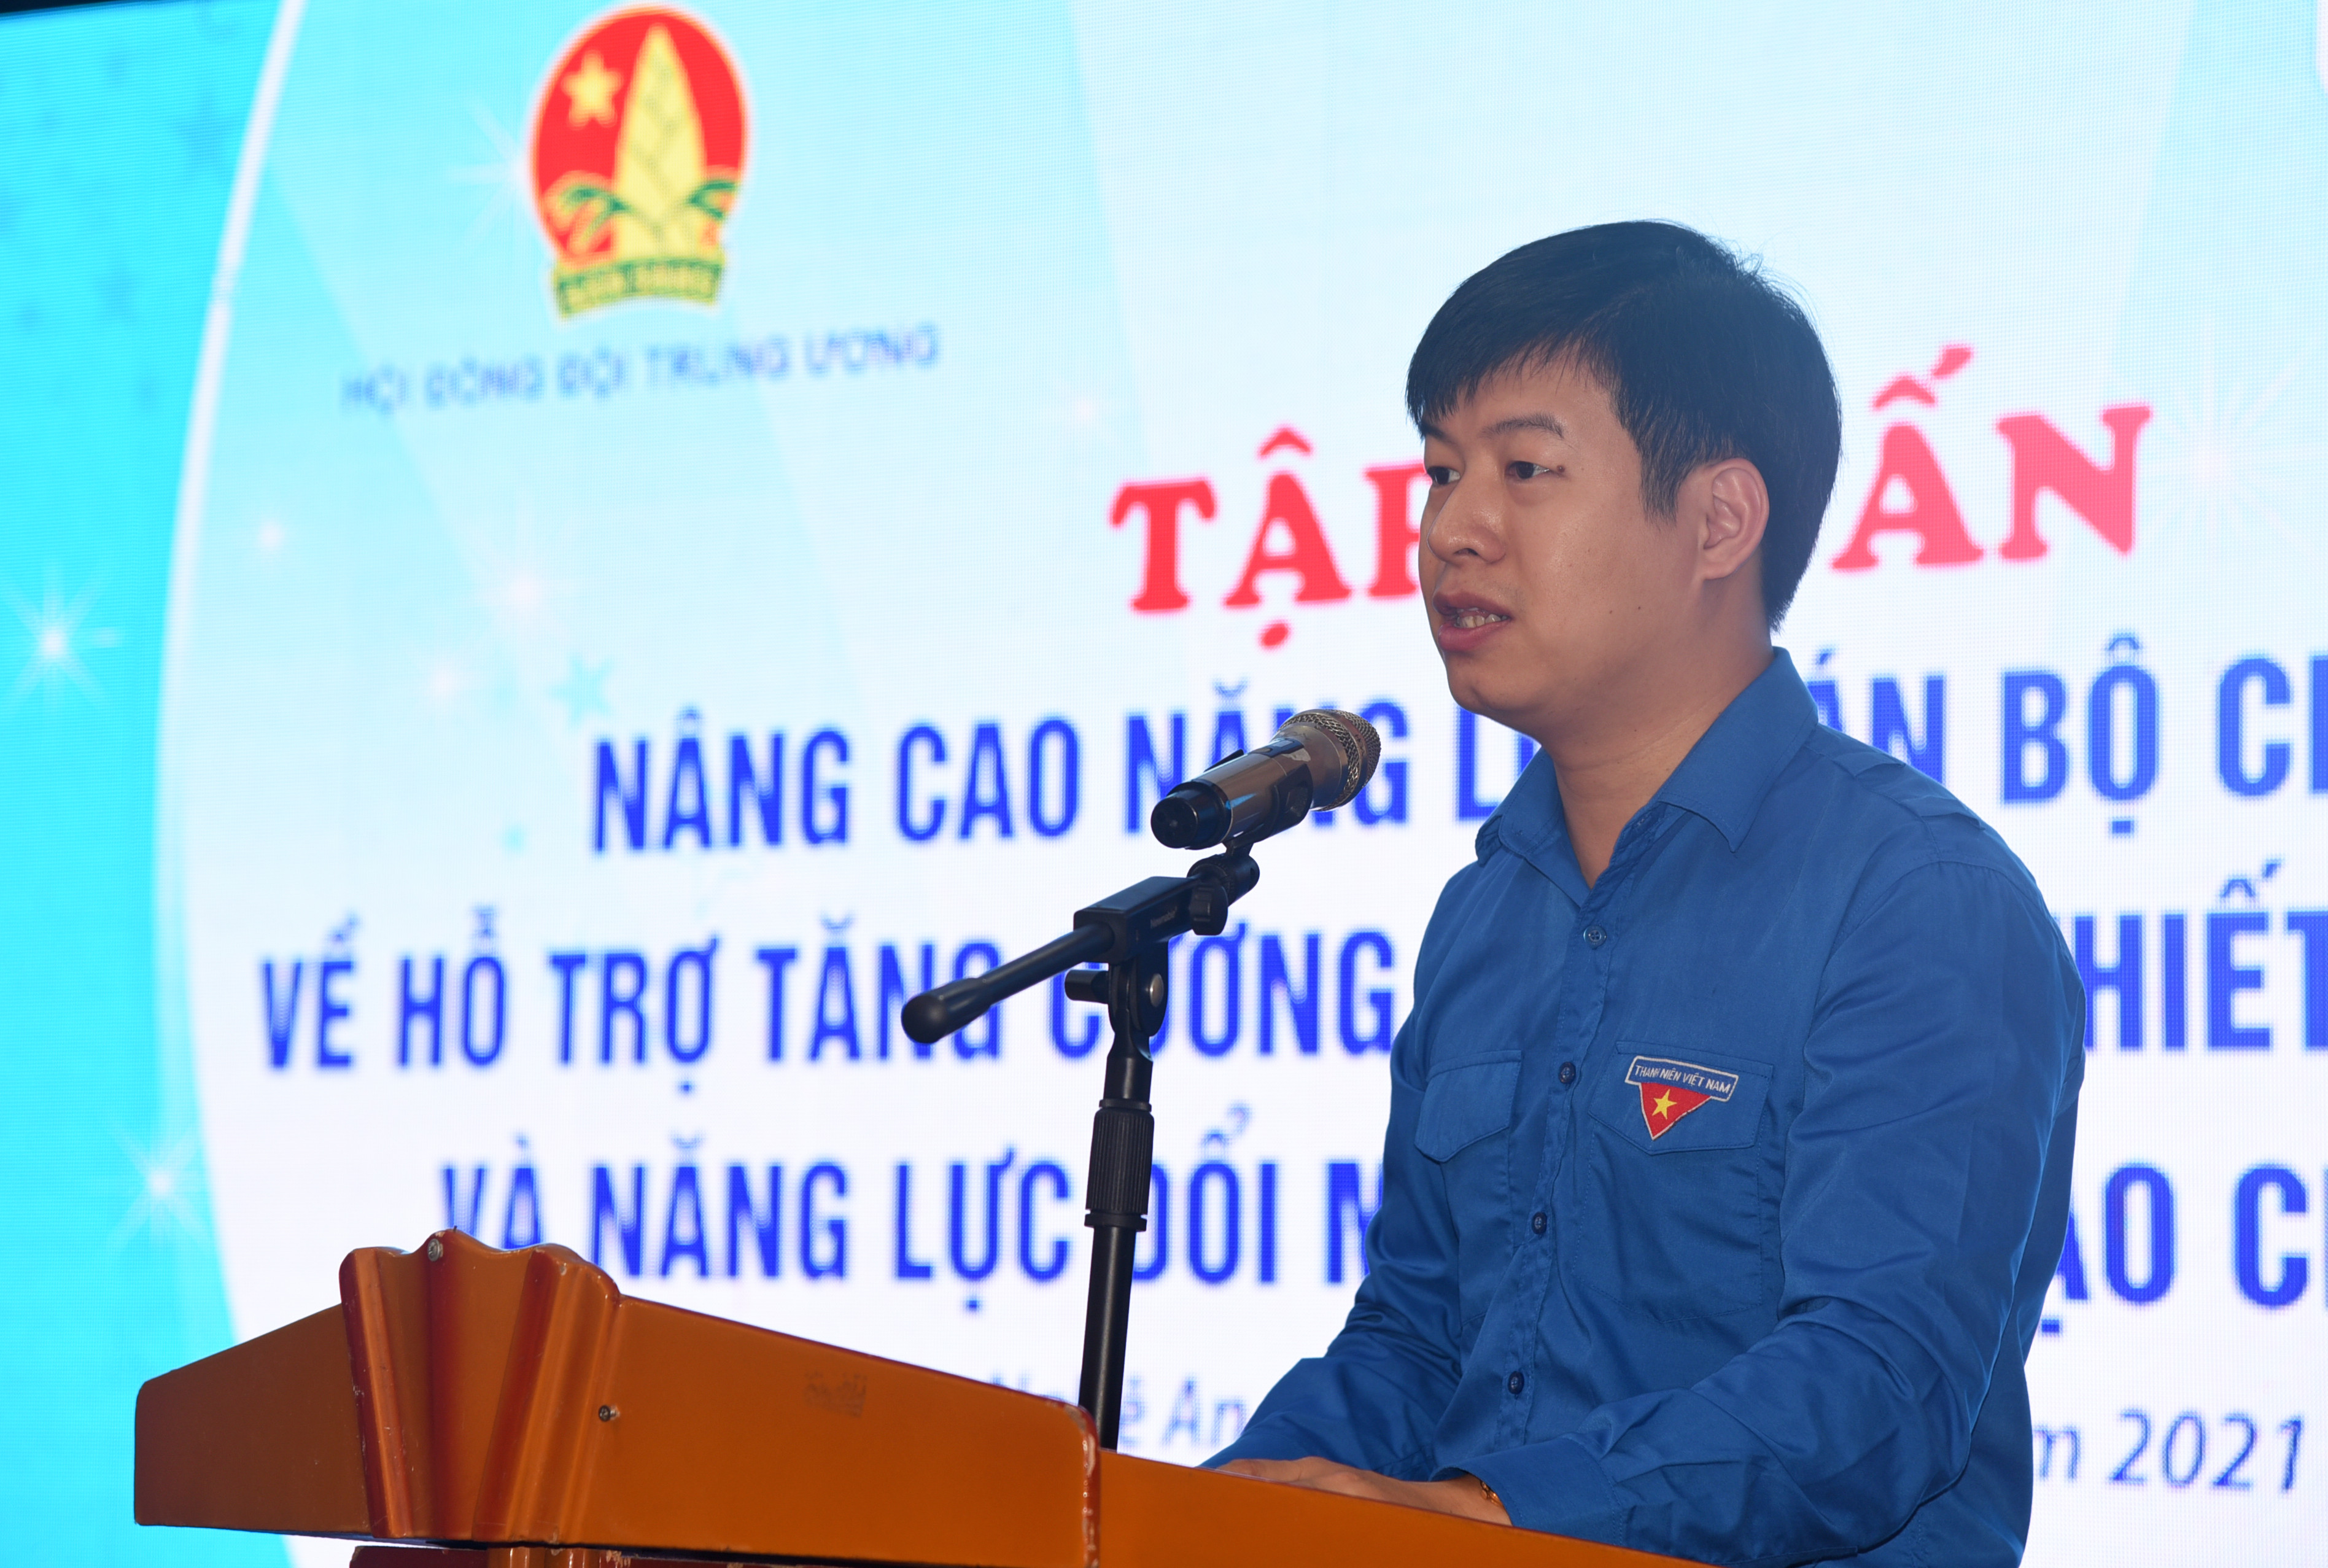 Phó chủ tịch Hội đồng Đội Trung ương Lê Hải Long cho biết Nghệ An là điểm đến đầu tiên của chương trình tập huấn nhằm nâng cao năng lực cho cán bộ đoàn, đội. Ảnh: TG